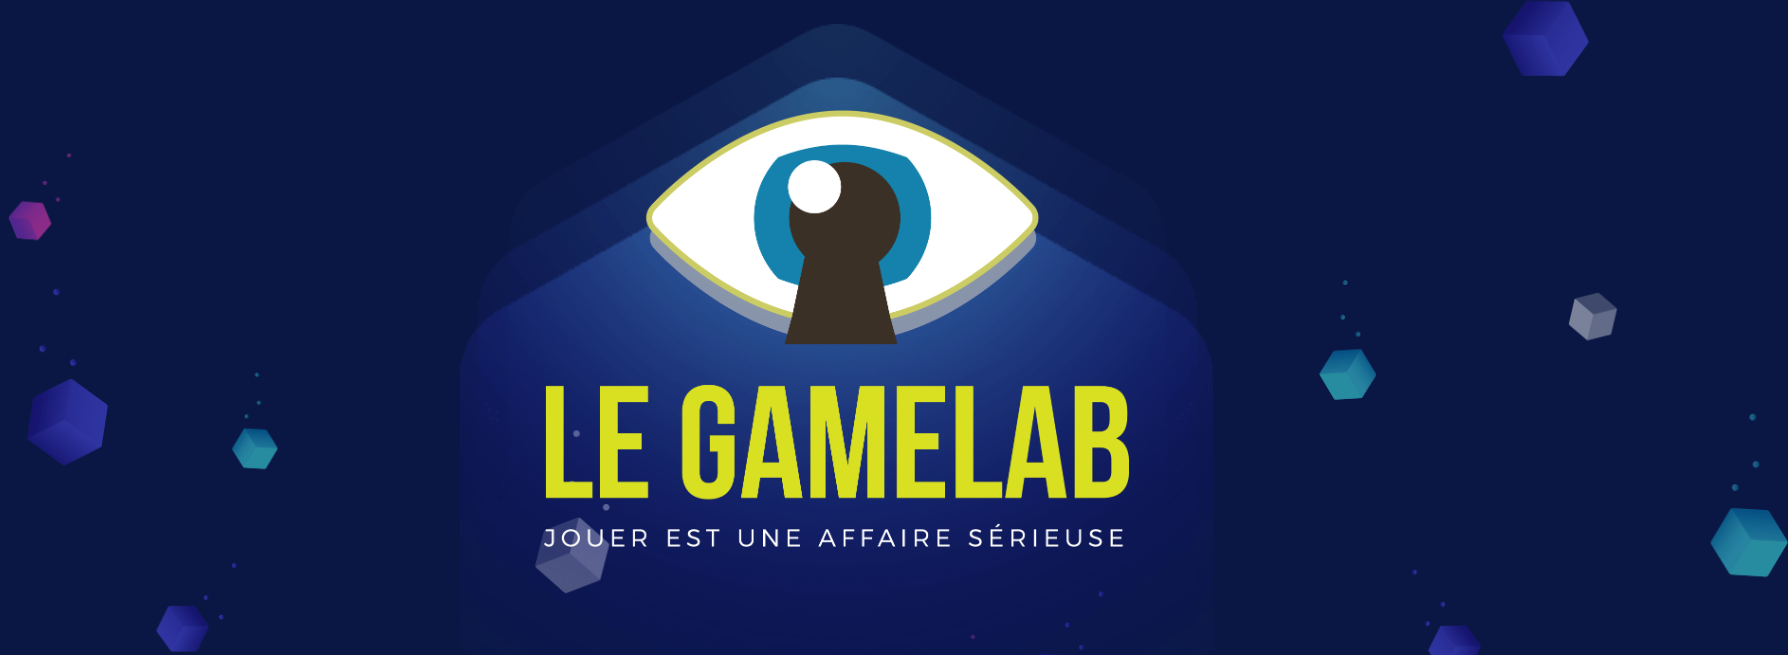 Le GameLab